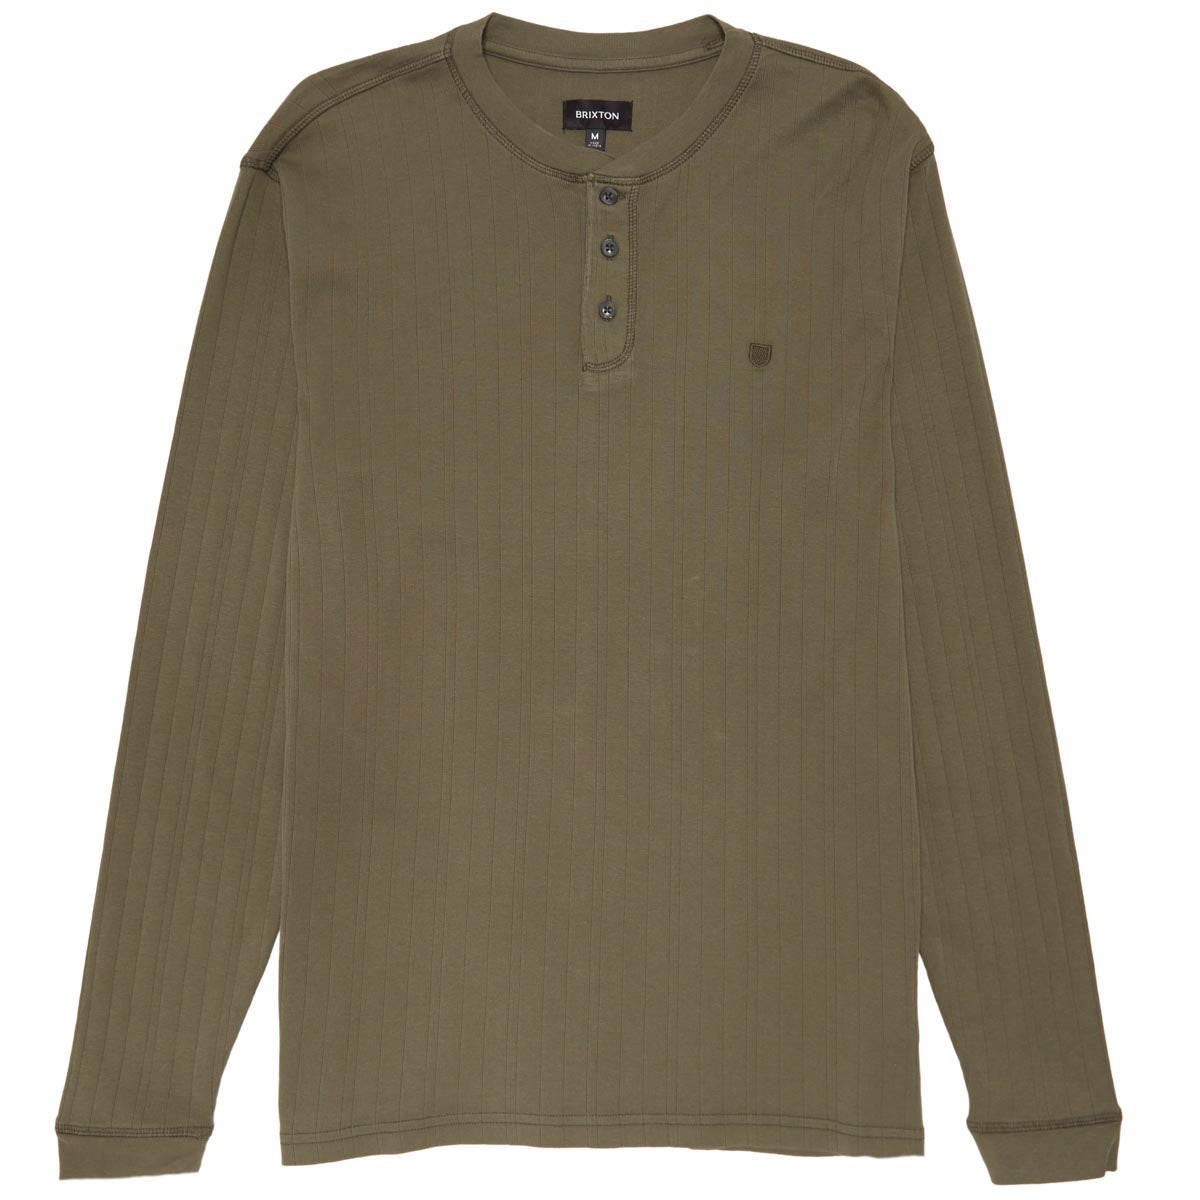 Brixton Wren Ribbed Henley Long Sleeve Shirt - Olive Surplus image 1